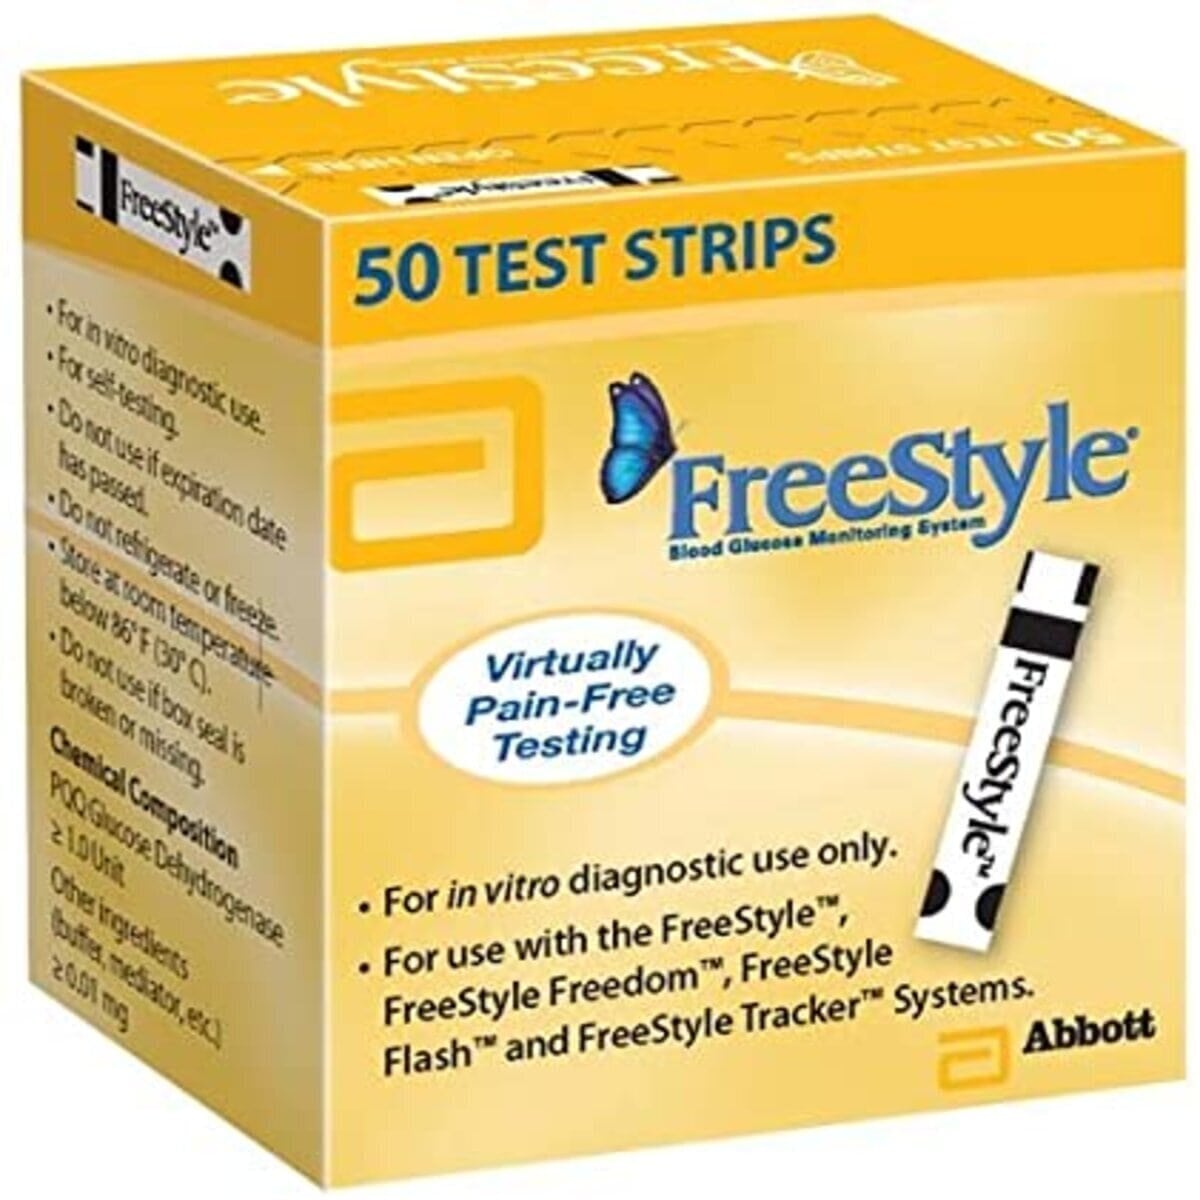 Freestyle diabetic testing strip